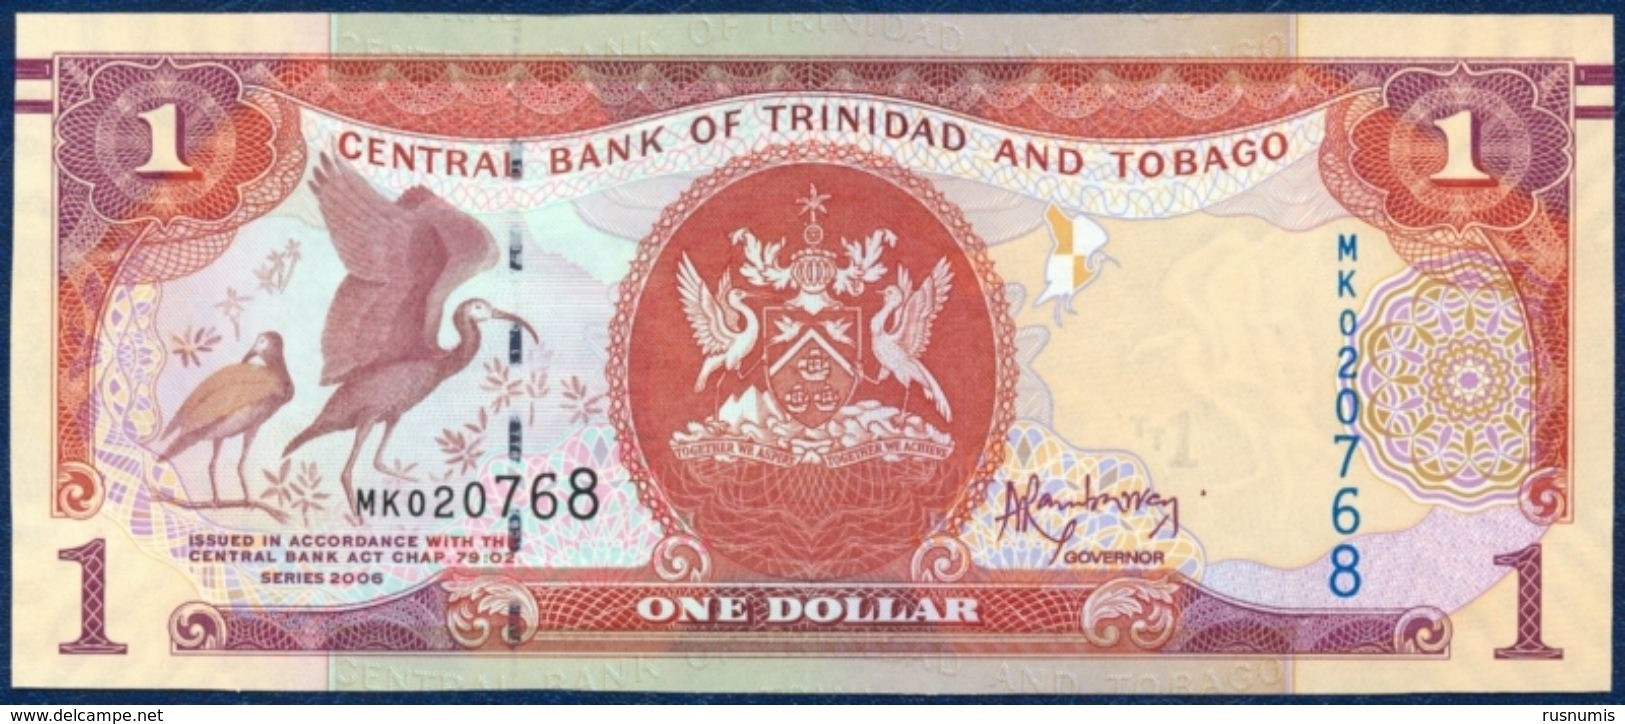 TRINIDAD AND TOBAGO 1 DOLLAR P-46A SIGNATURE: Jwala Rambarran BIRD - SCARLET IBIS CENTRAL BANK 2006 UNC - Trindad & Tobago